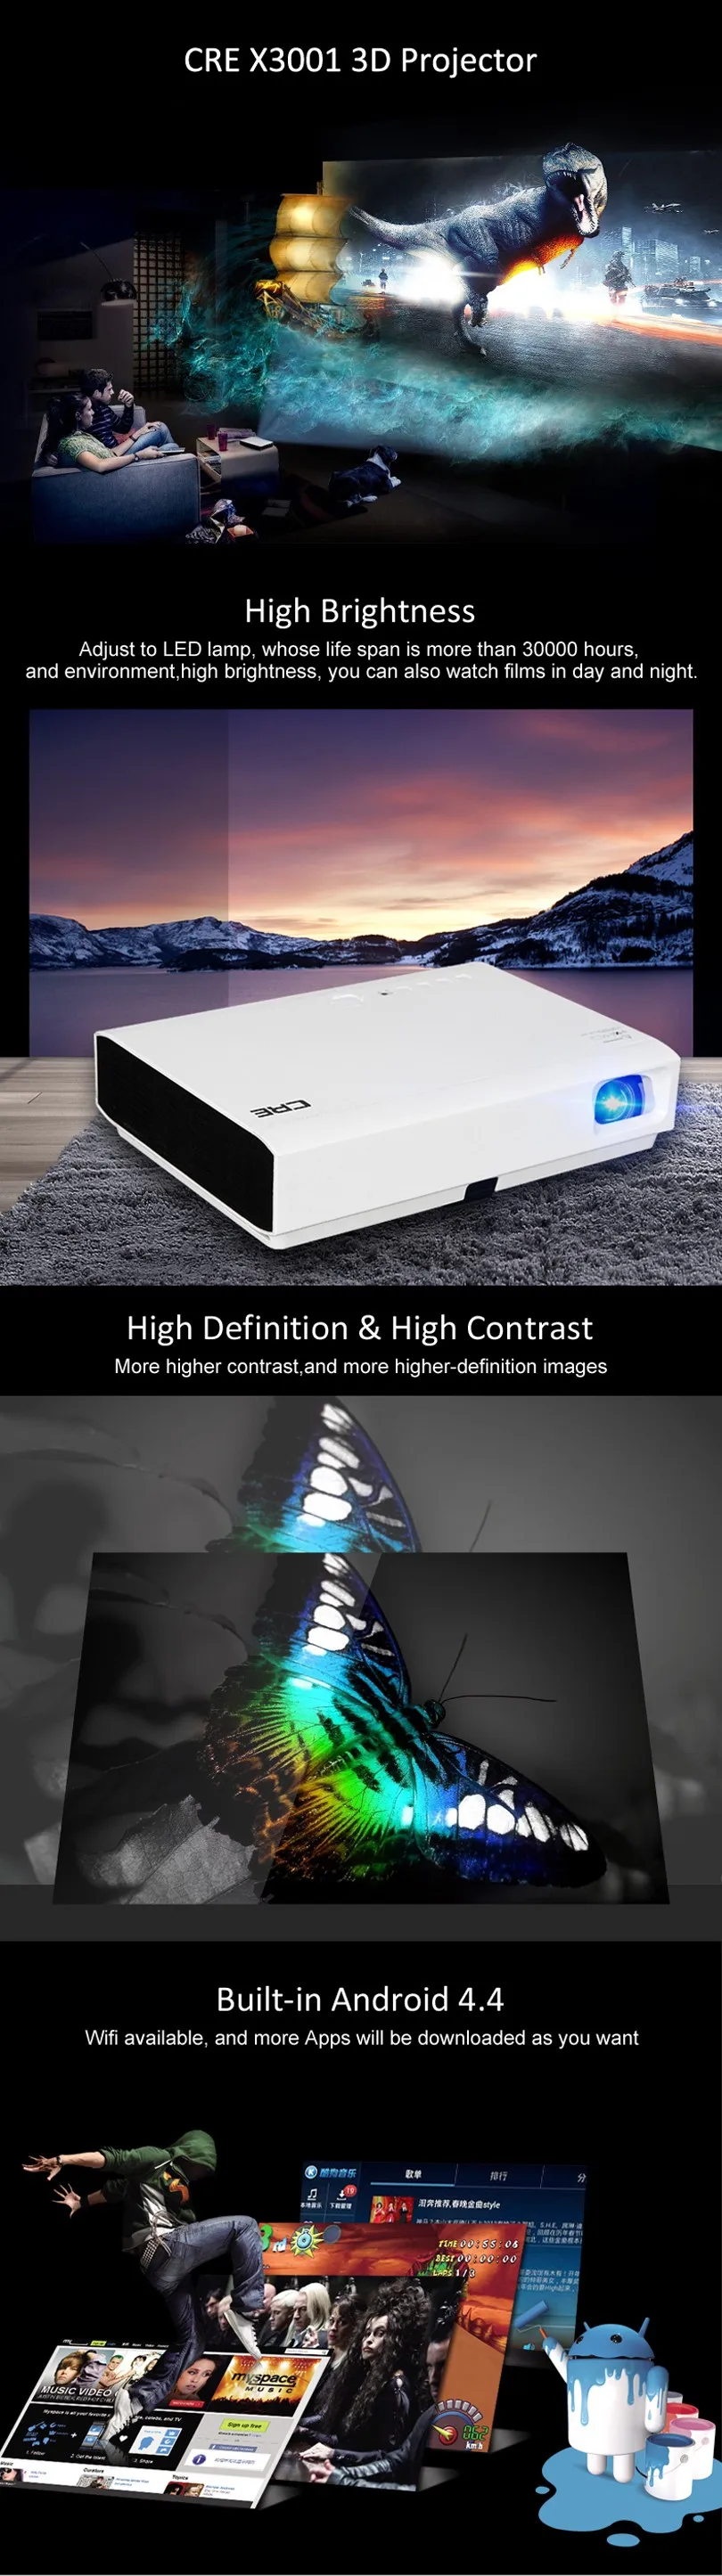 Самый дешевый cre X3001 3000 люмен проектор full HD 1080p 3LED DLP видео проектор идеальный домашний кинотеатр бизнес проектор